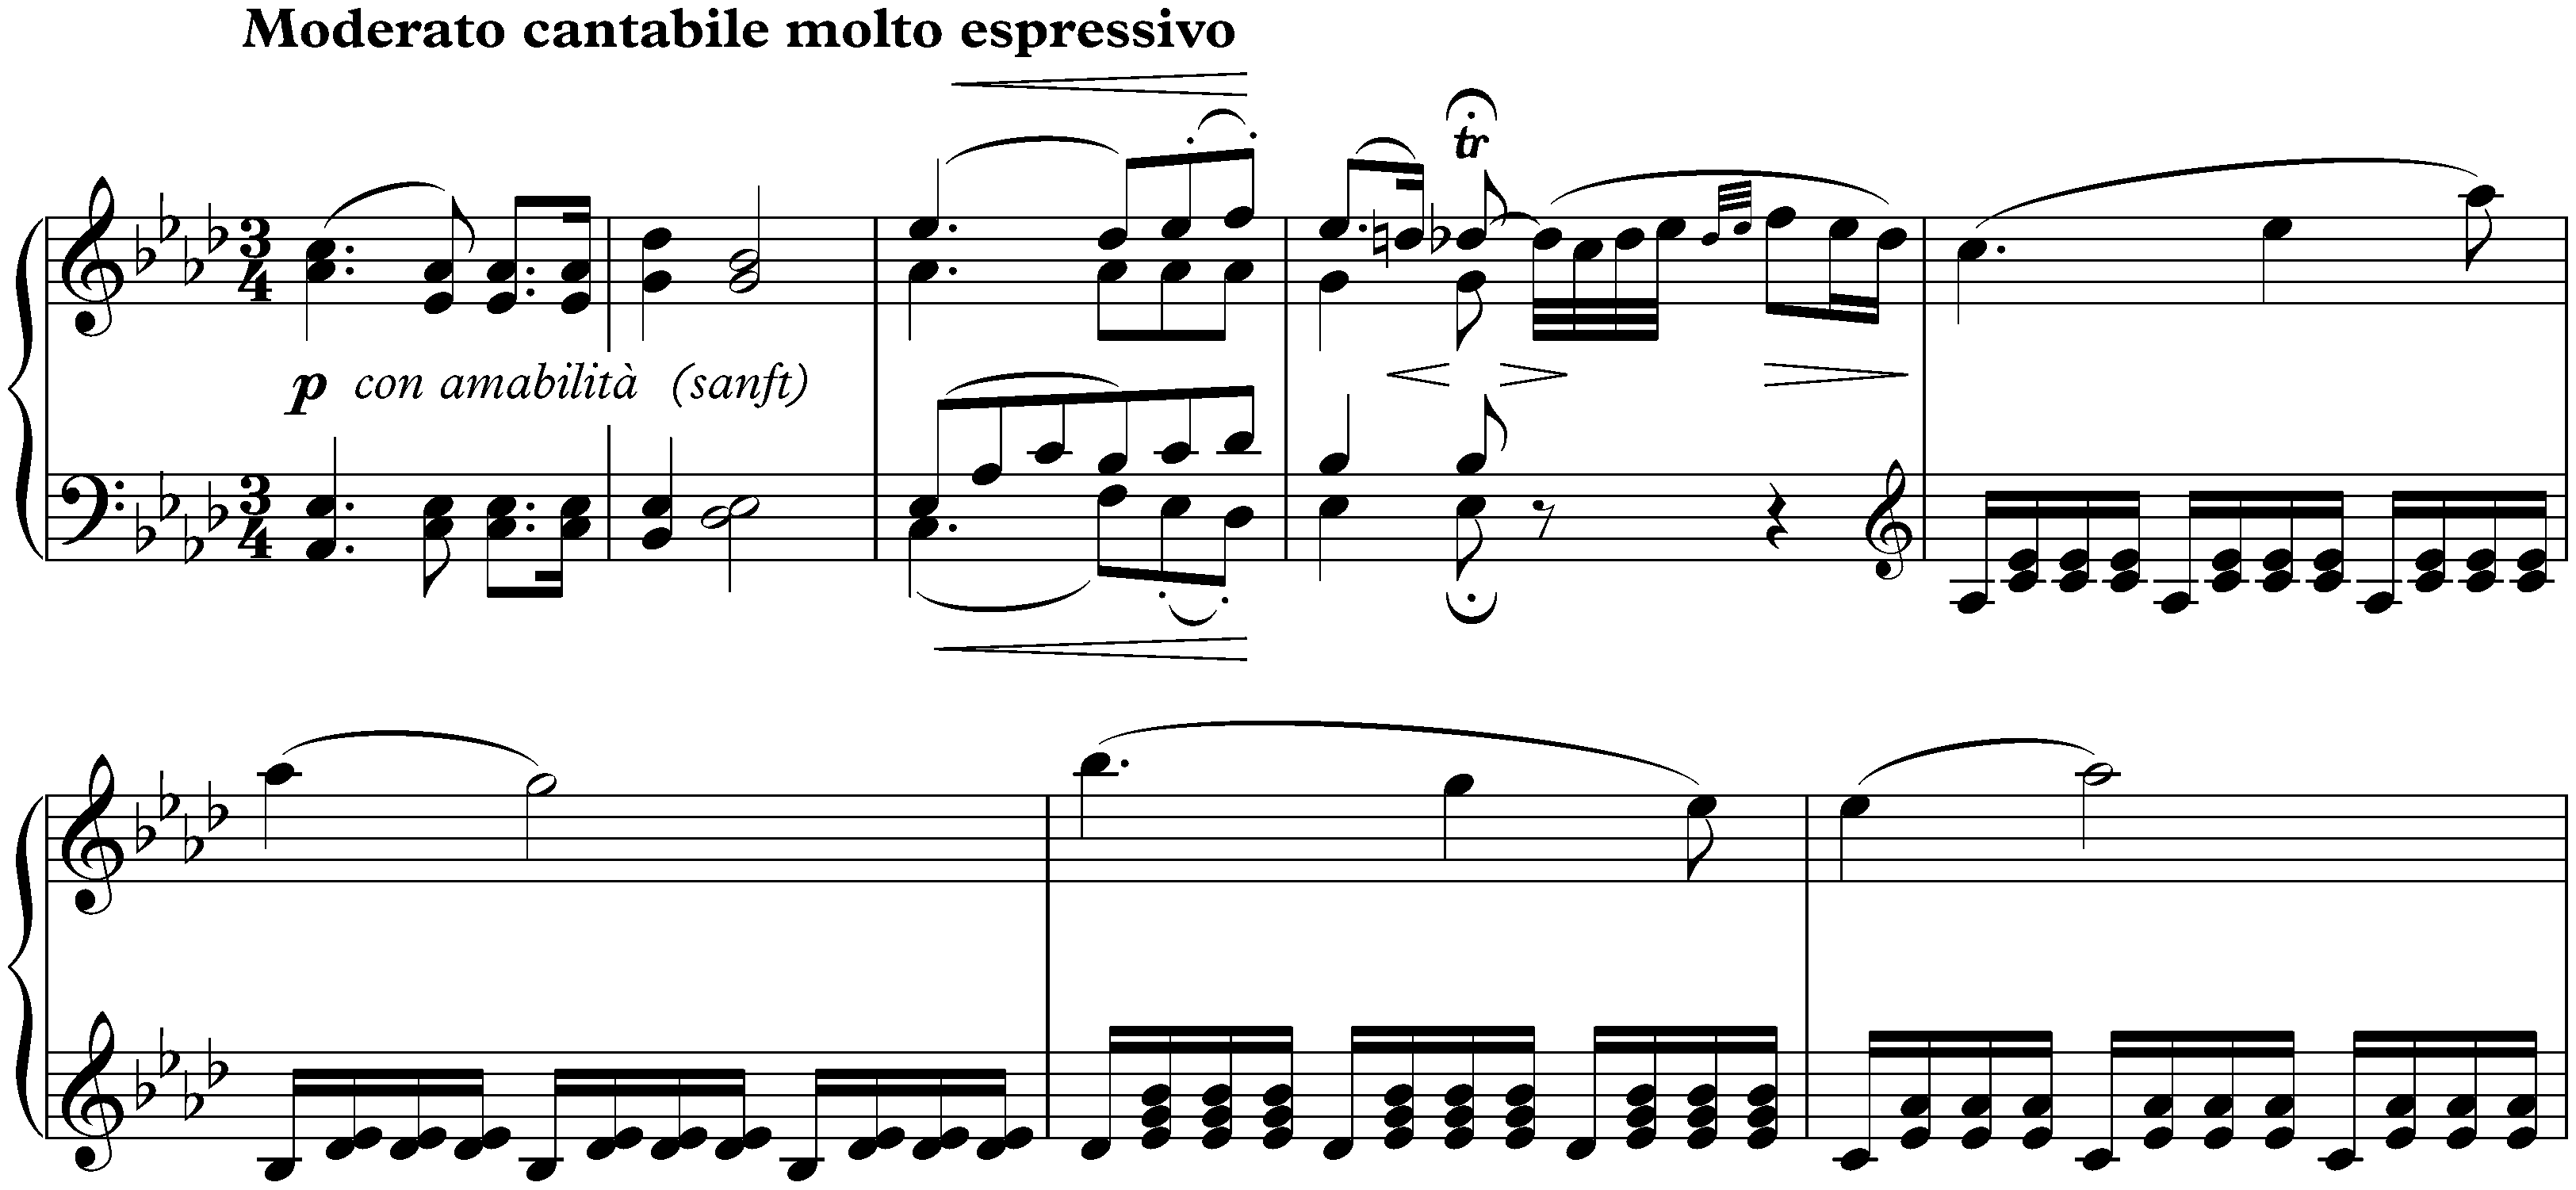 Sonata no. 31 in A-flat major, op. 110; 1. Moderato cantabile molto espressivo